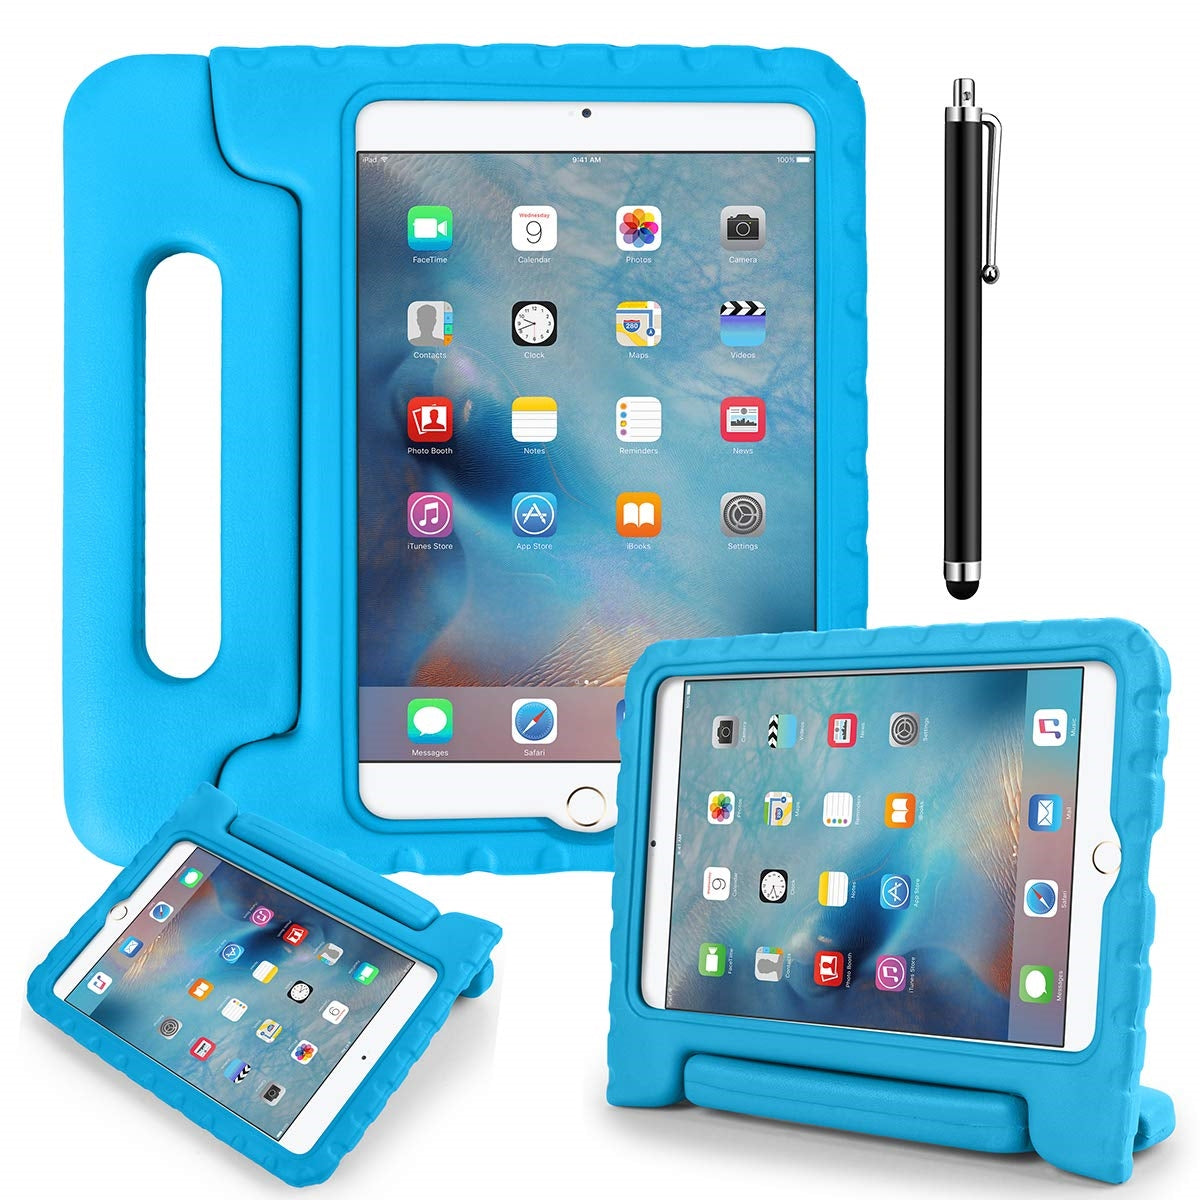 Consomac : Les accessoires officiels pour les iPad Air et iPad mini de 2019